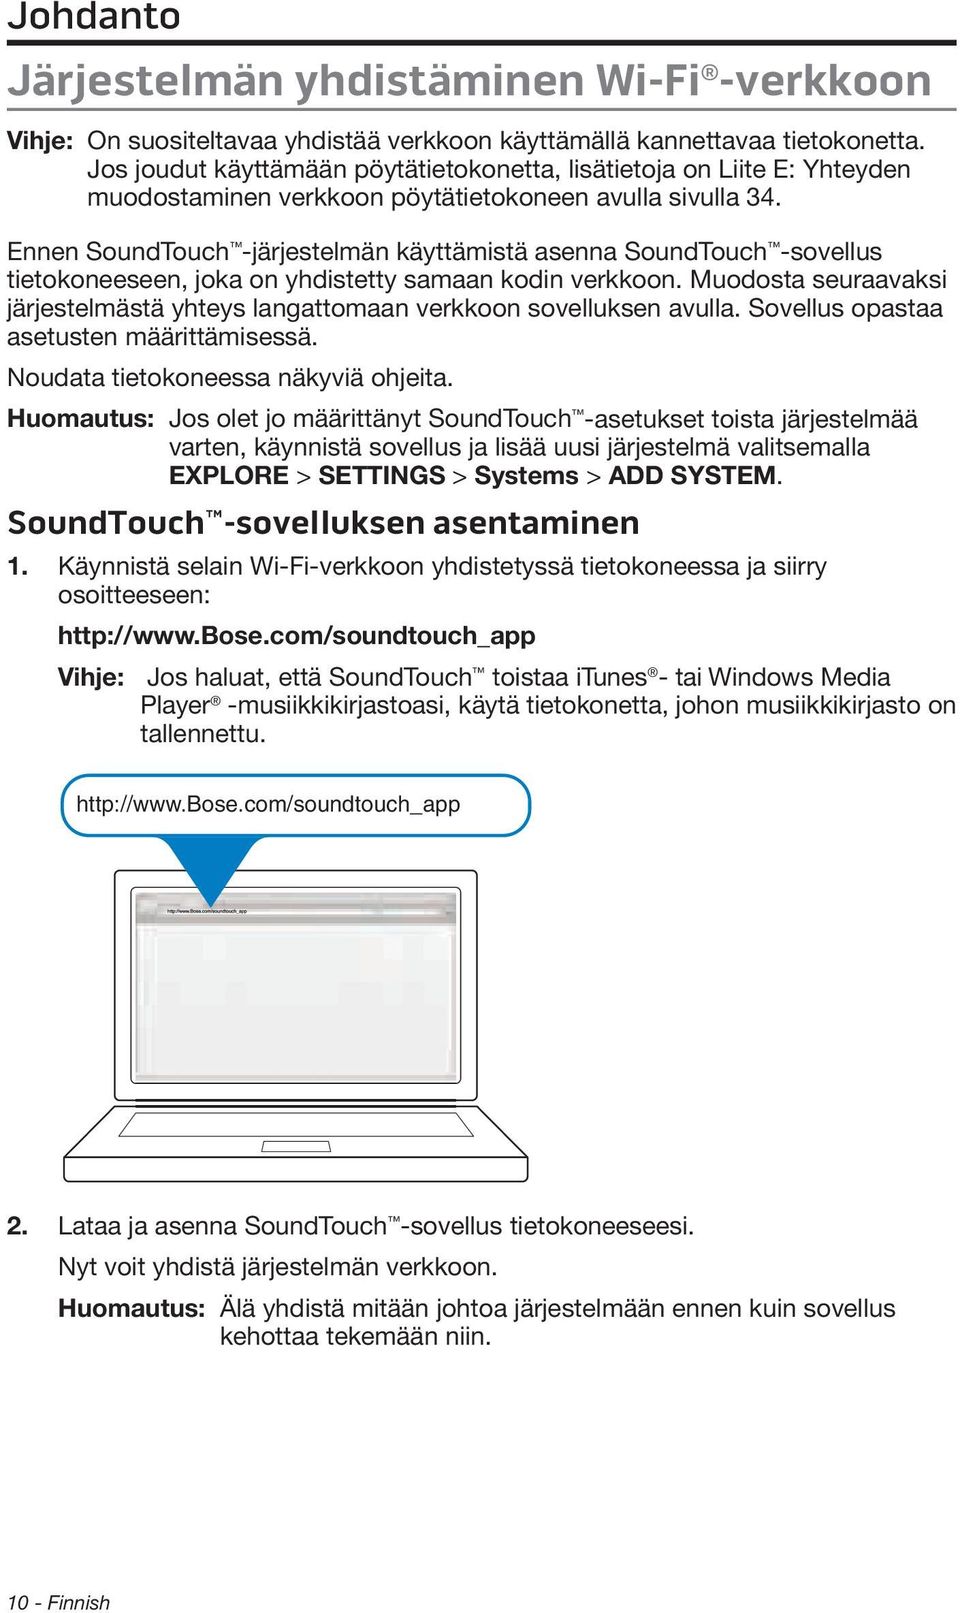 Ennen SoundTouch -järjestelmän käyttämistä asenna SoundTouch -sovellus tietokoneeseen, joka on yhdistetty samaan kodin verkkoon.